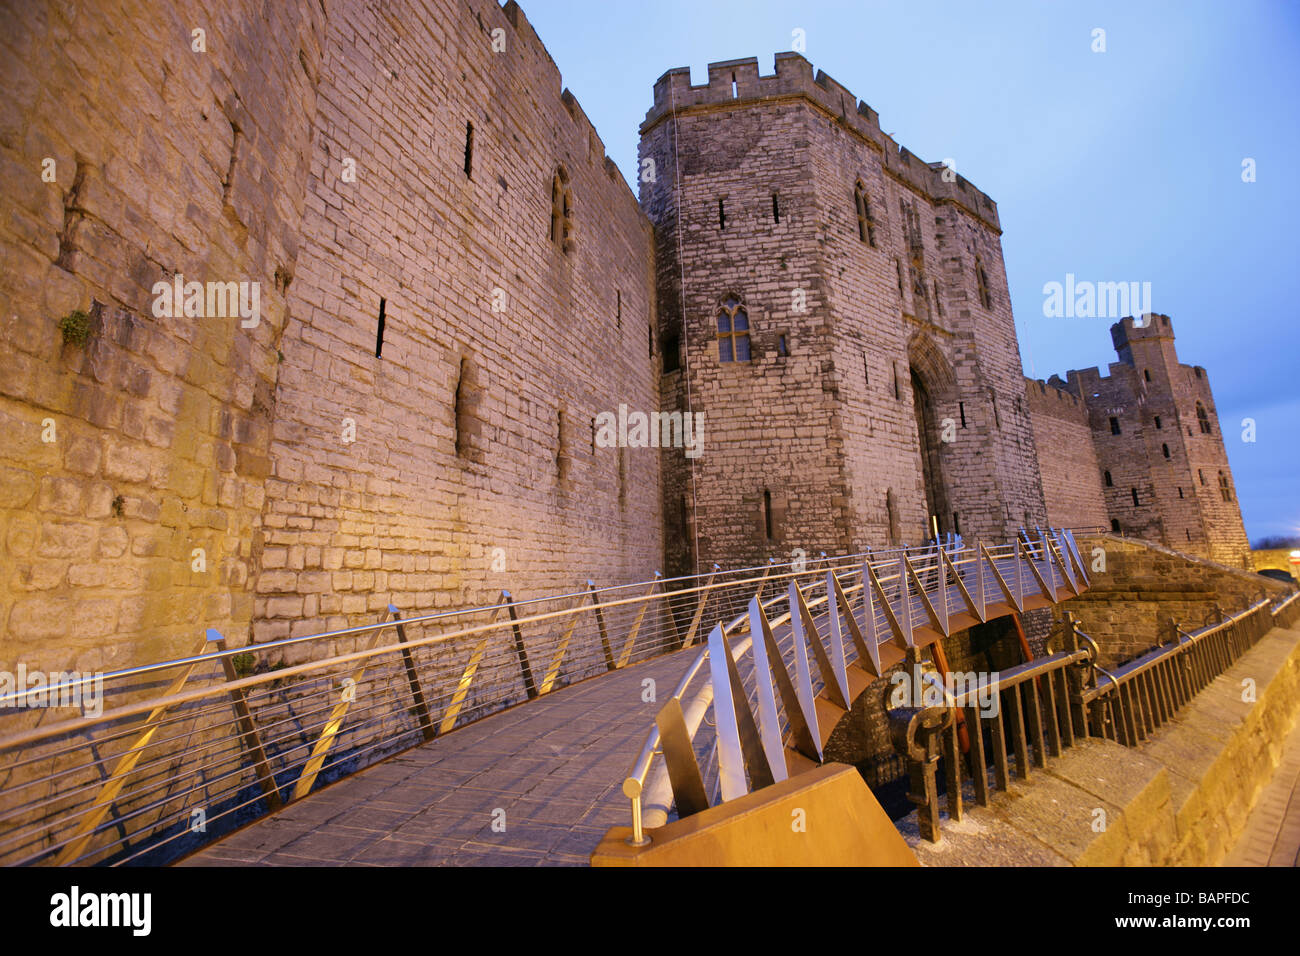 Ville de Caernarfon, Pays de Galles. Vue de nuit sur la rampe d'accès handicapés moderne au château de Caernarfon Kings Gate entrée. Banque D'Images